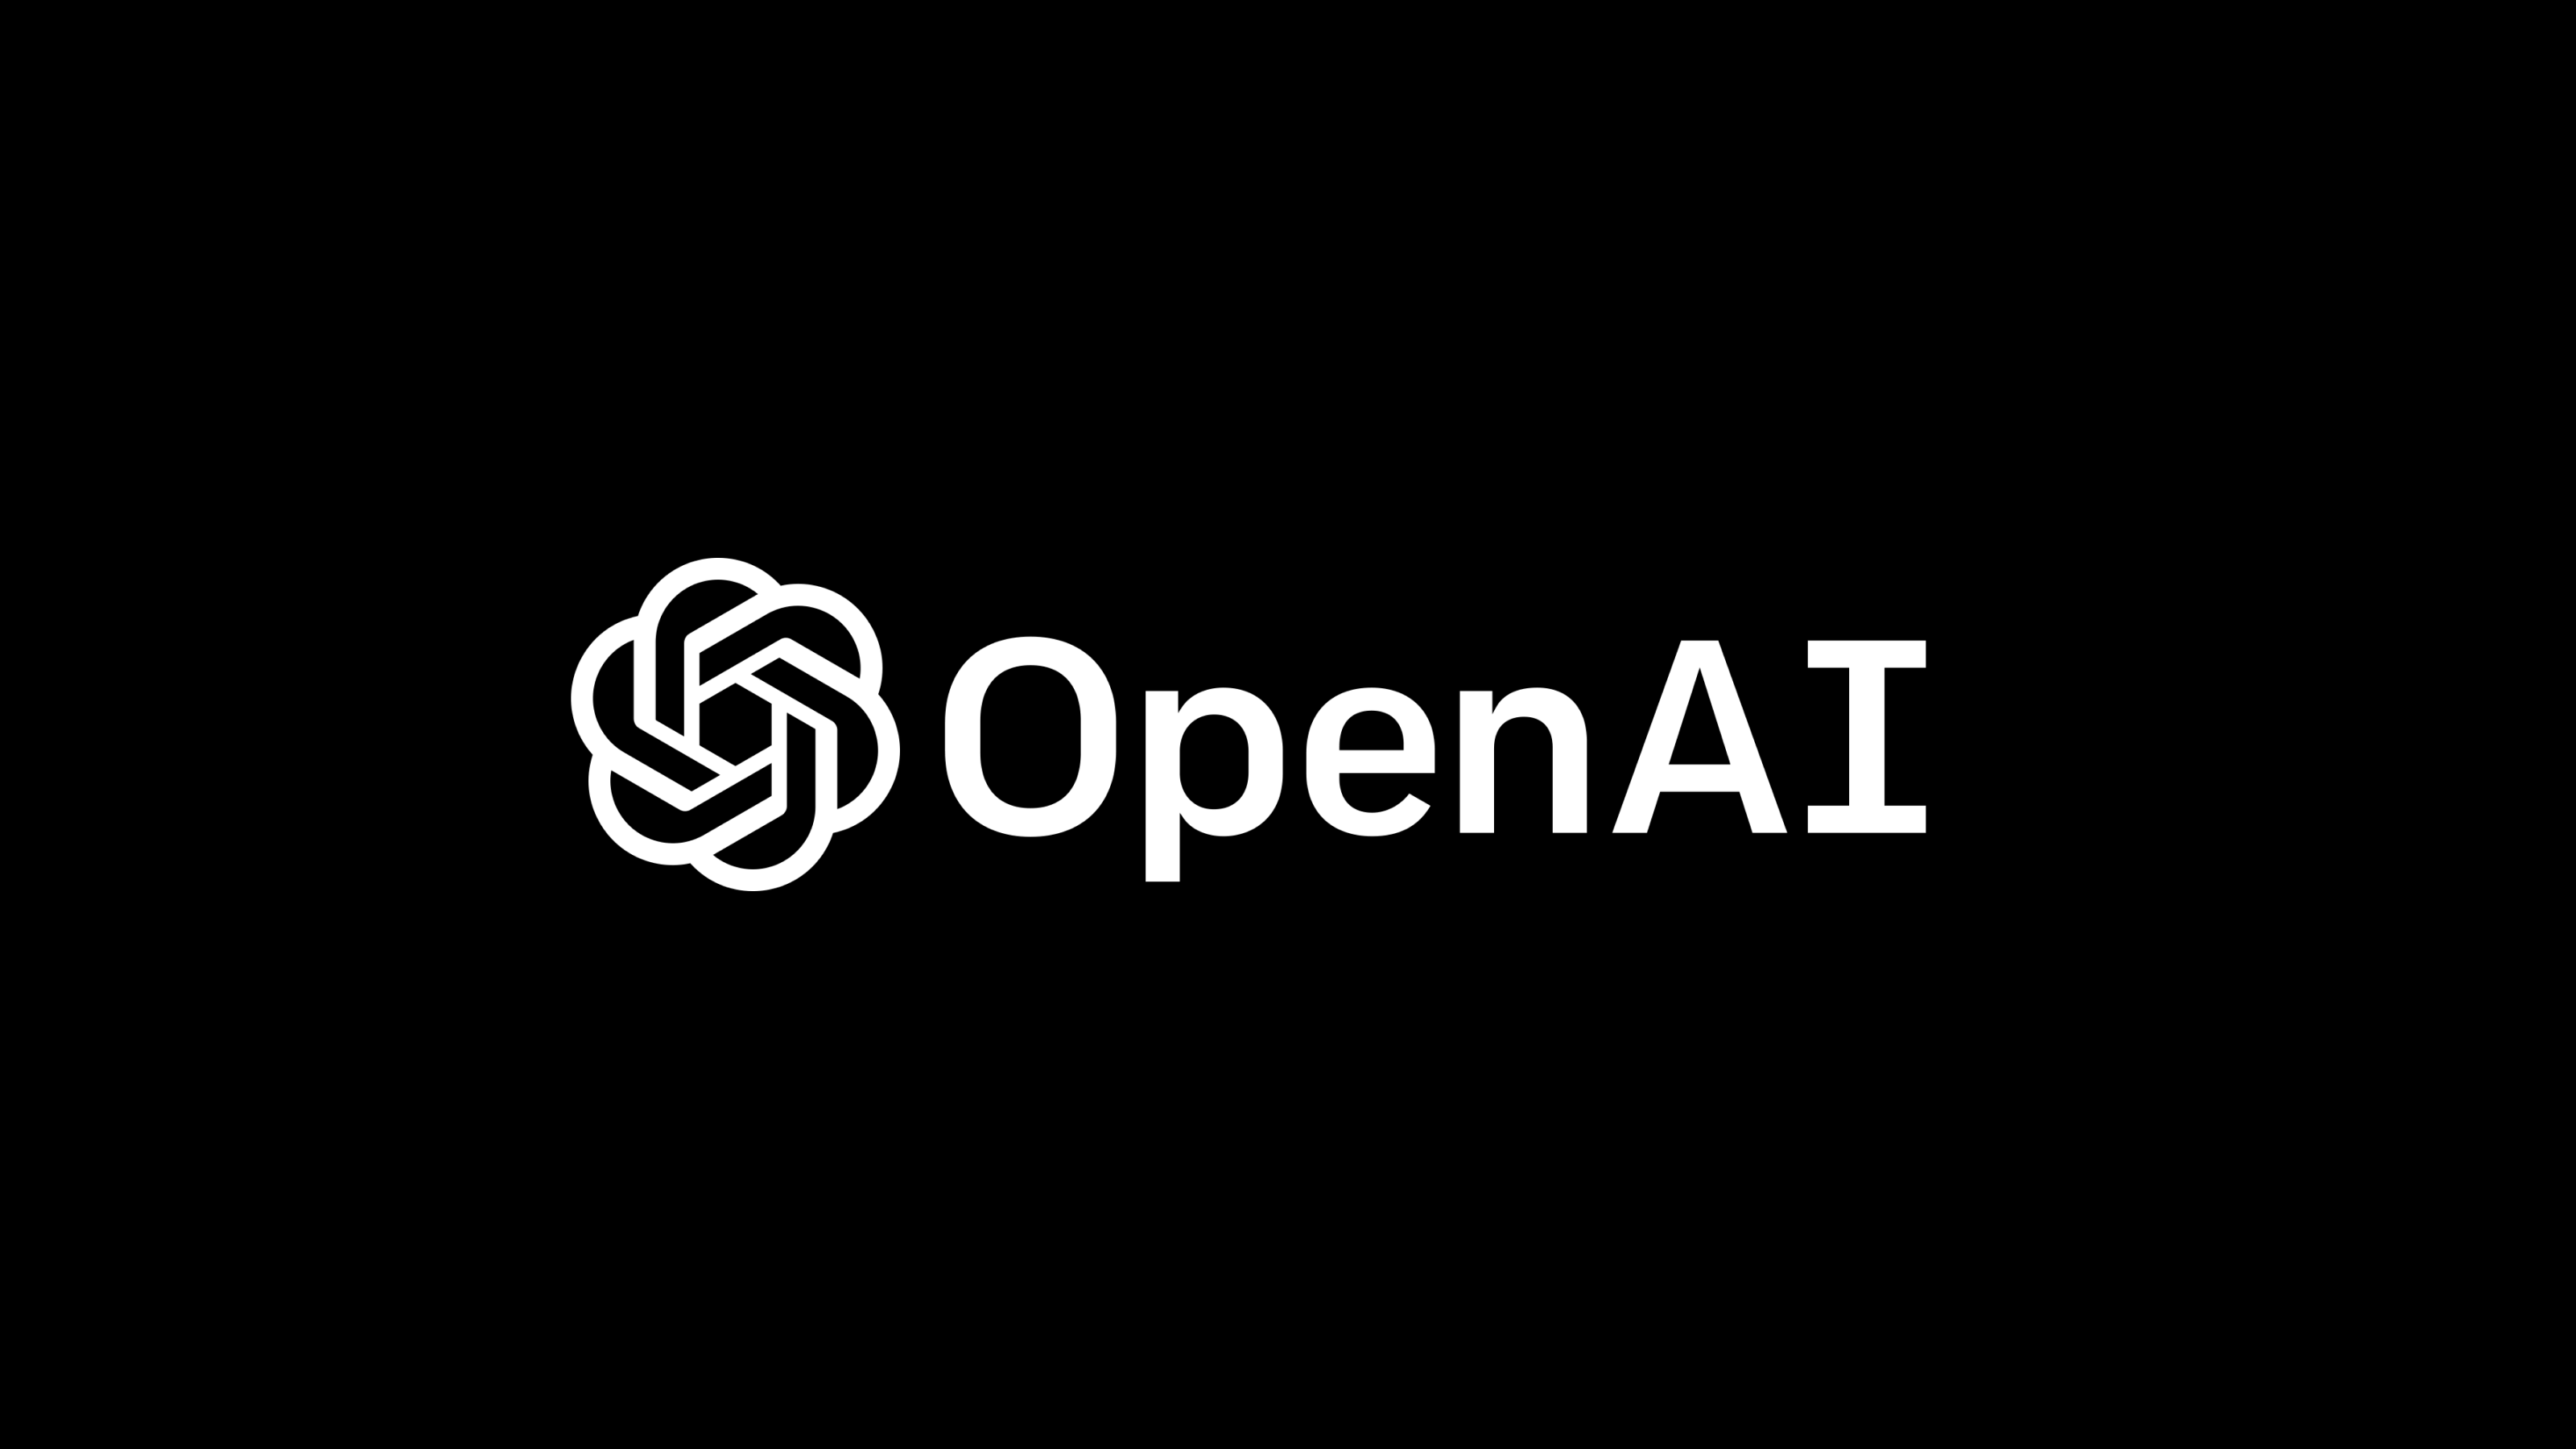 
Lịch sử hình thành OpenAI
